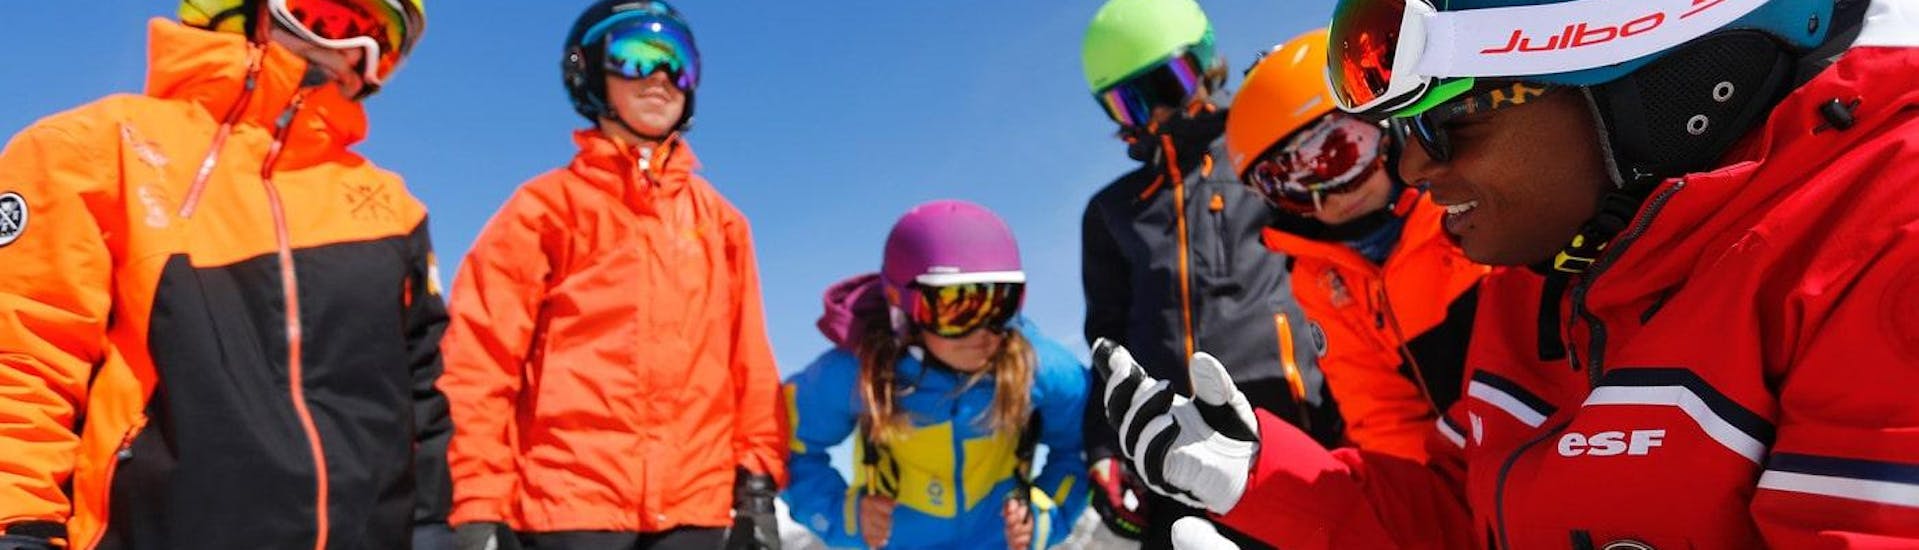 Los adolescentes se reúnen alrededor de su instructor de esquí de la escuela de esquí ESF Alpe d'Huez, antes de sus clases de esquí para adolescentes "Team Rider" (13-17 años) - Todos los niveles.